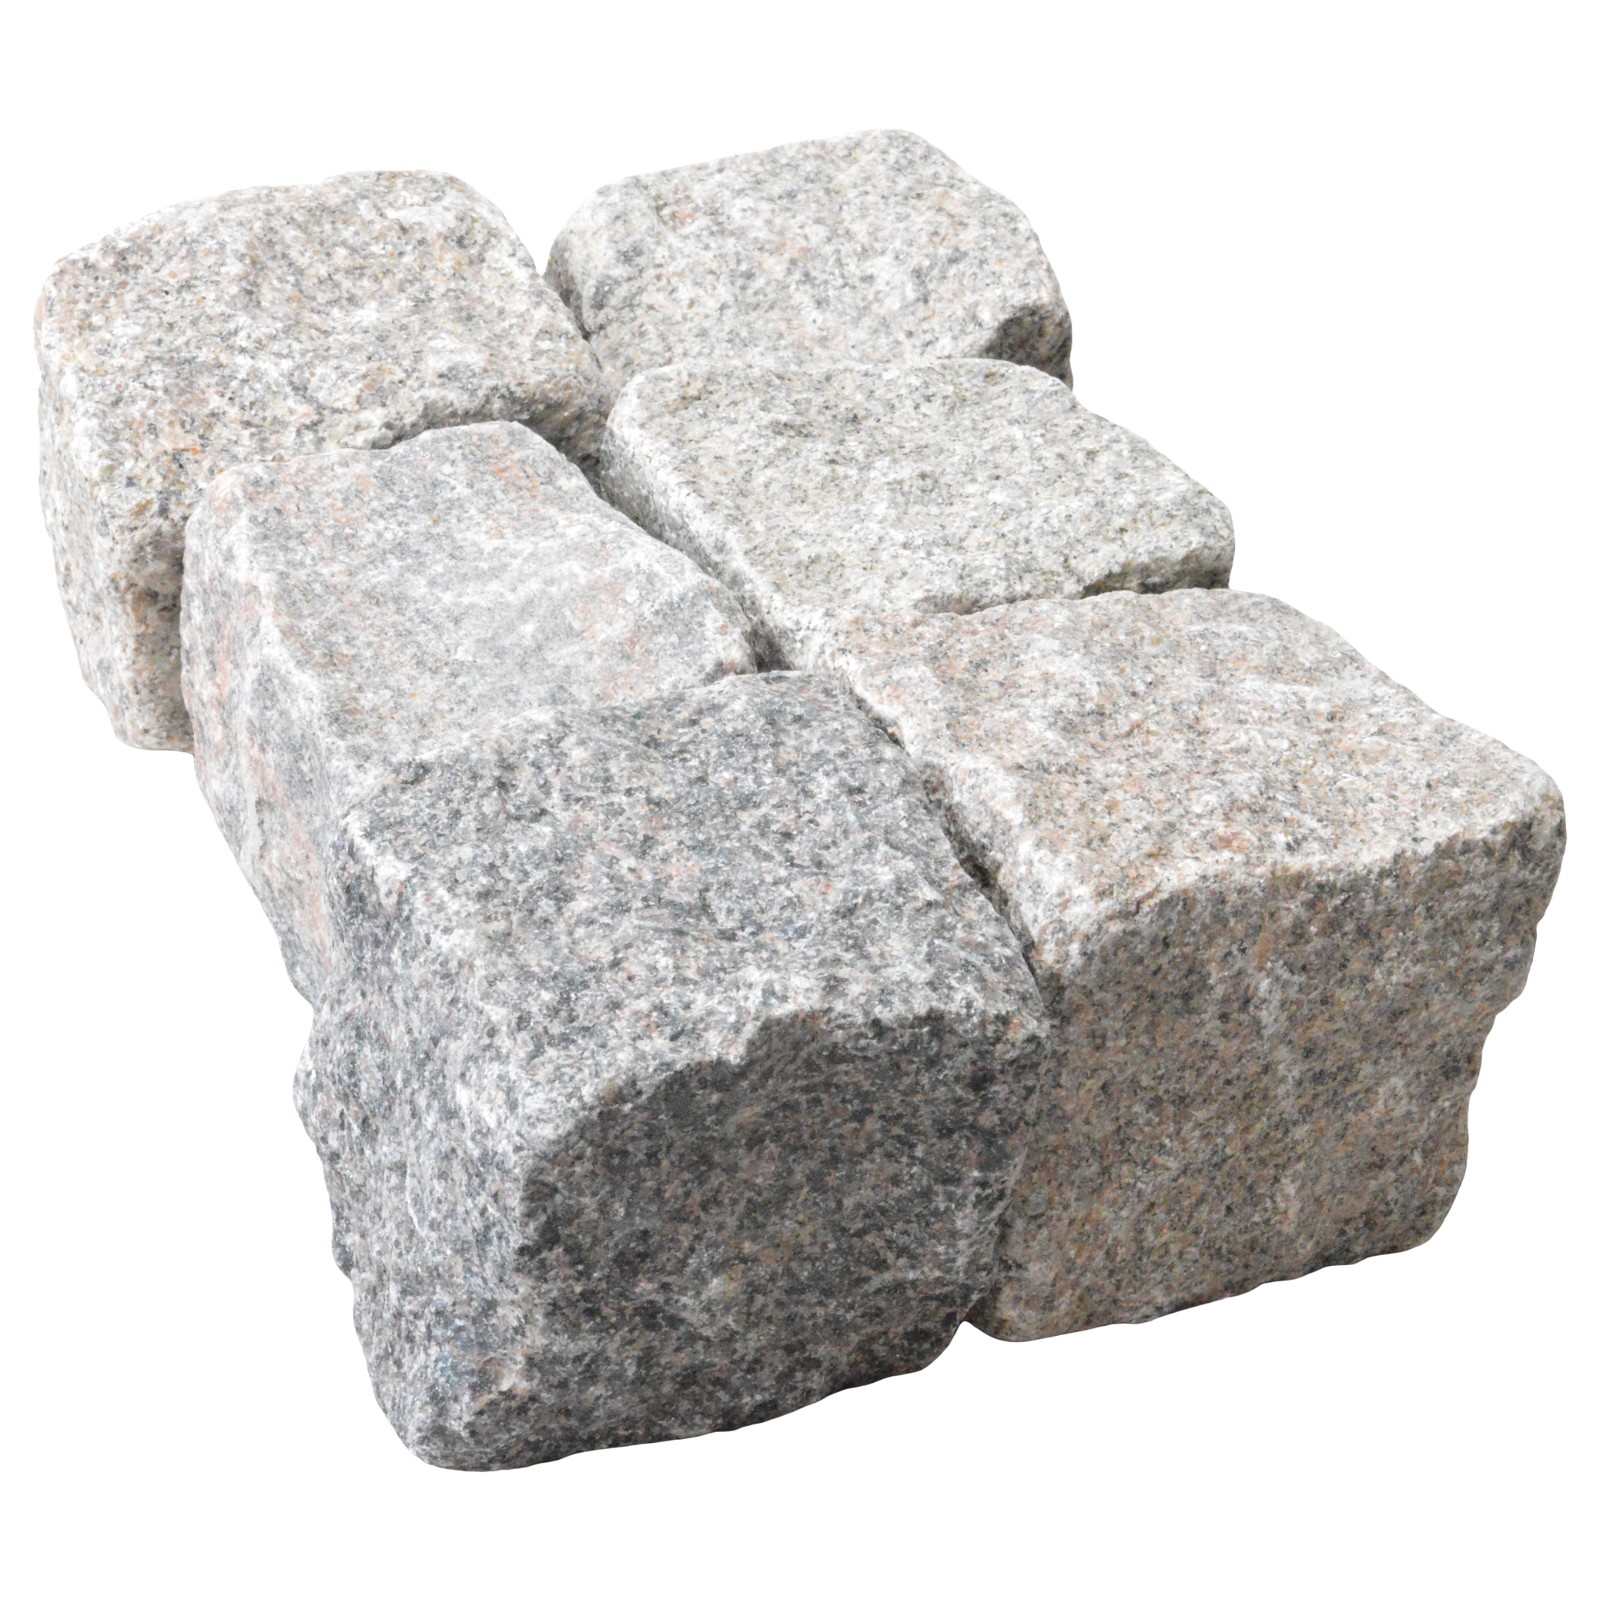 Granit Chaussesten Nordisk blanding 8-11 cm I BIG BAG